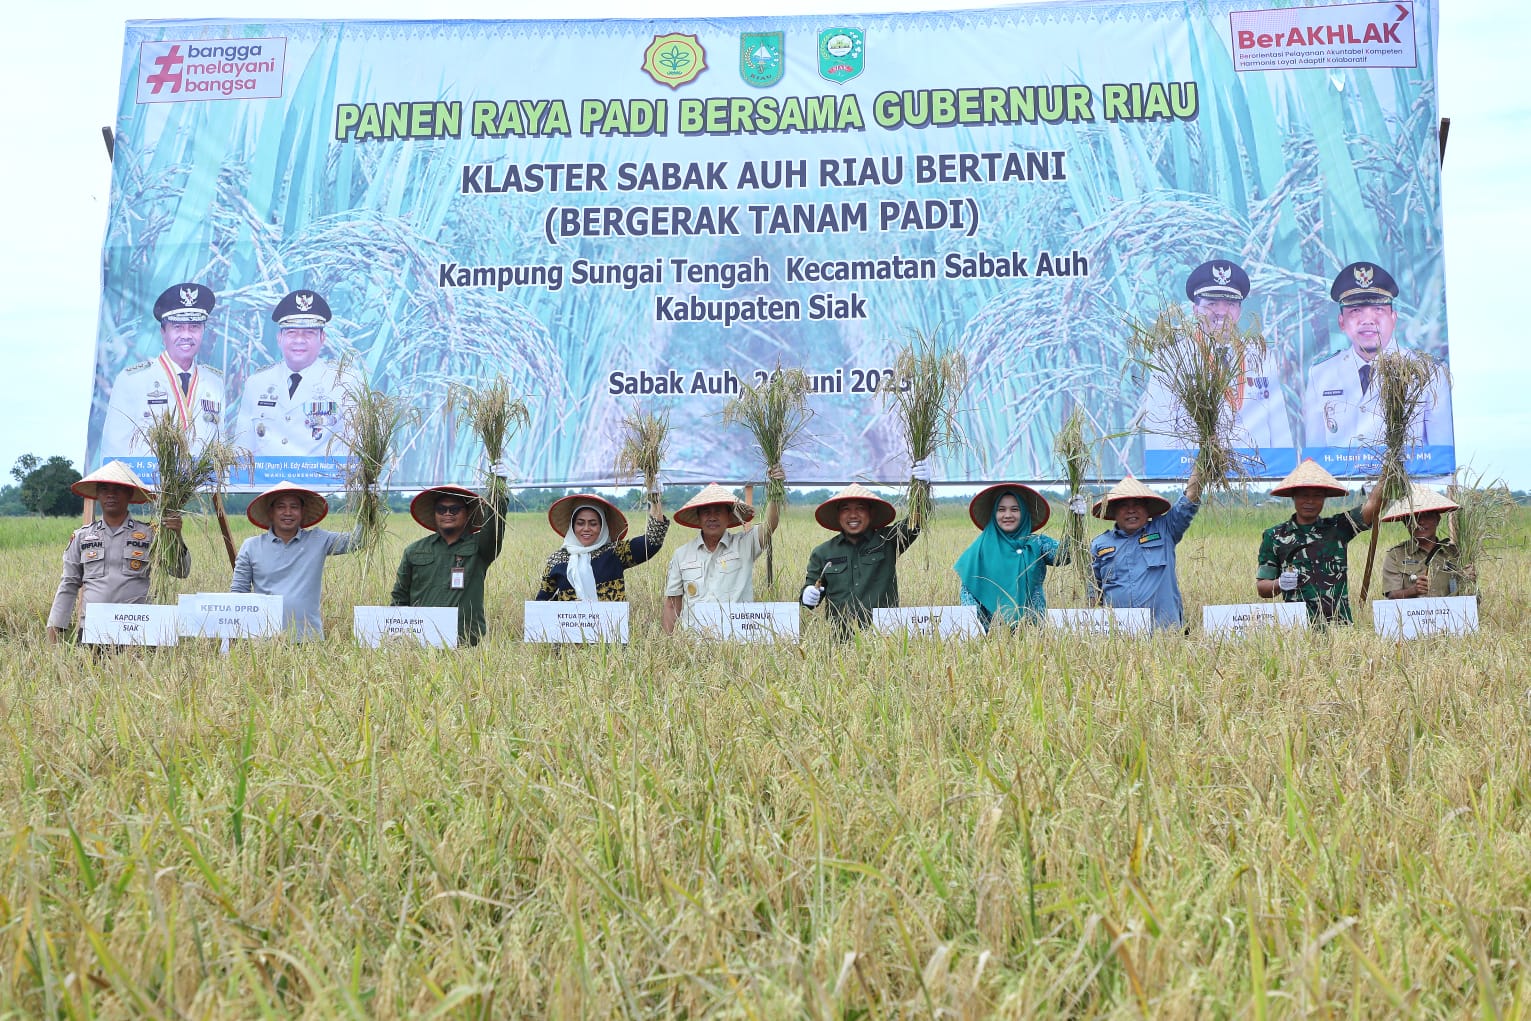 Gubernur Riau Resmikan Panen Raya Padi di Sabak Auh